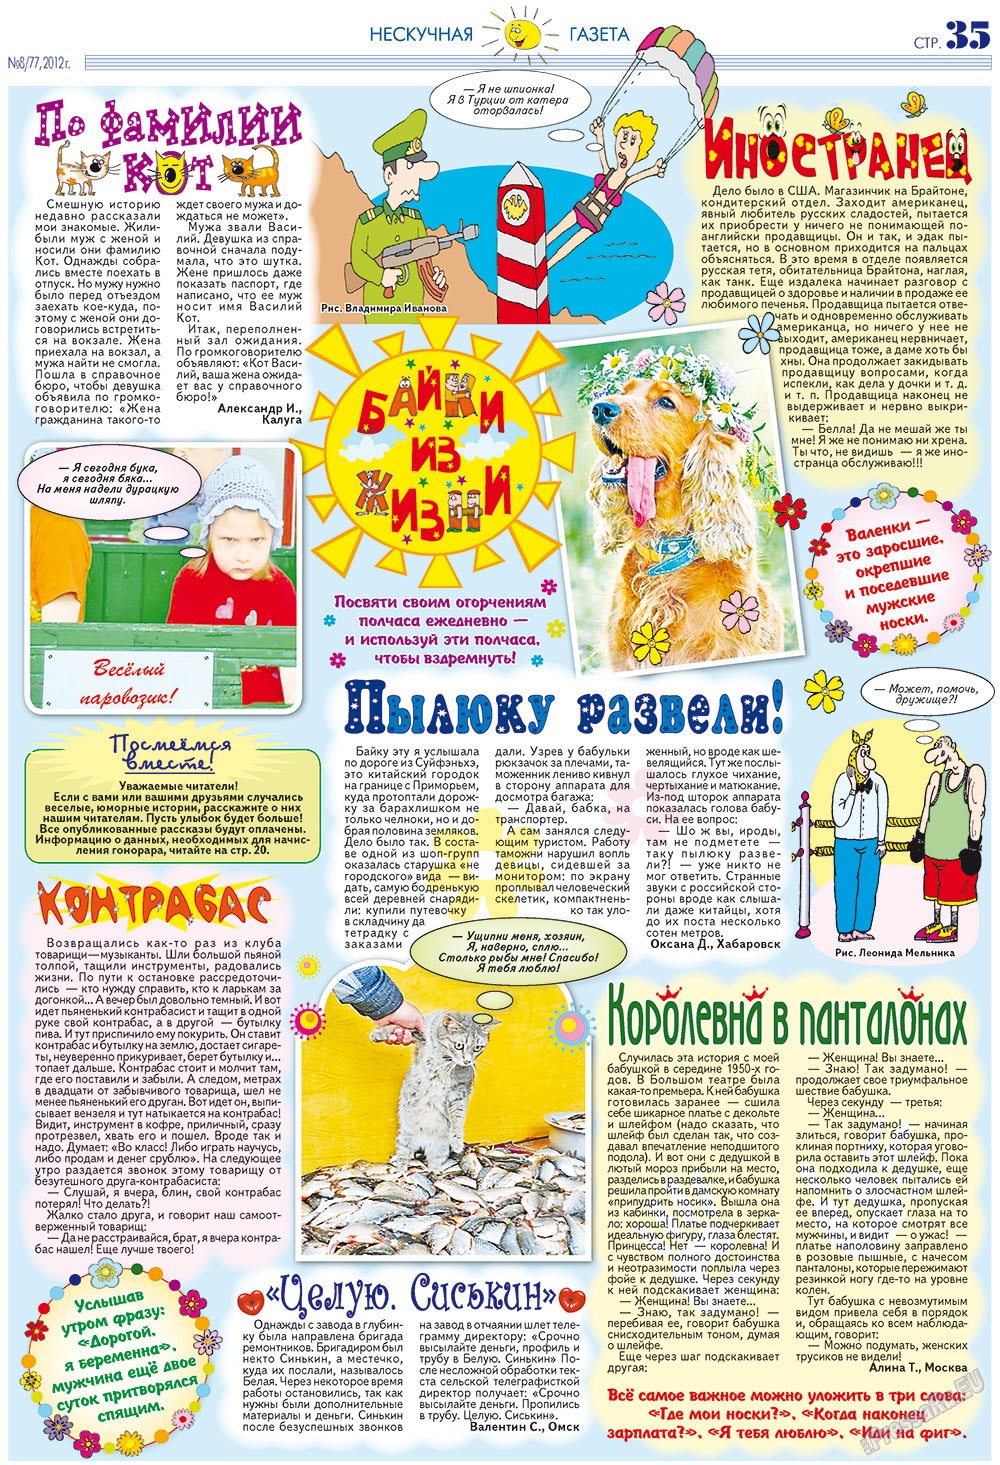 Нескучная газета (журнал). 2012 год, номер 8, стр. 35